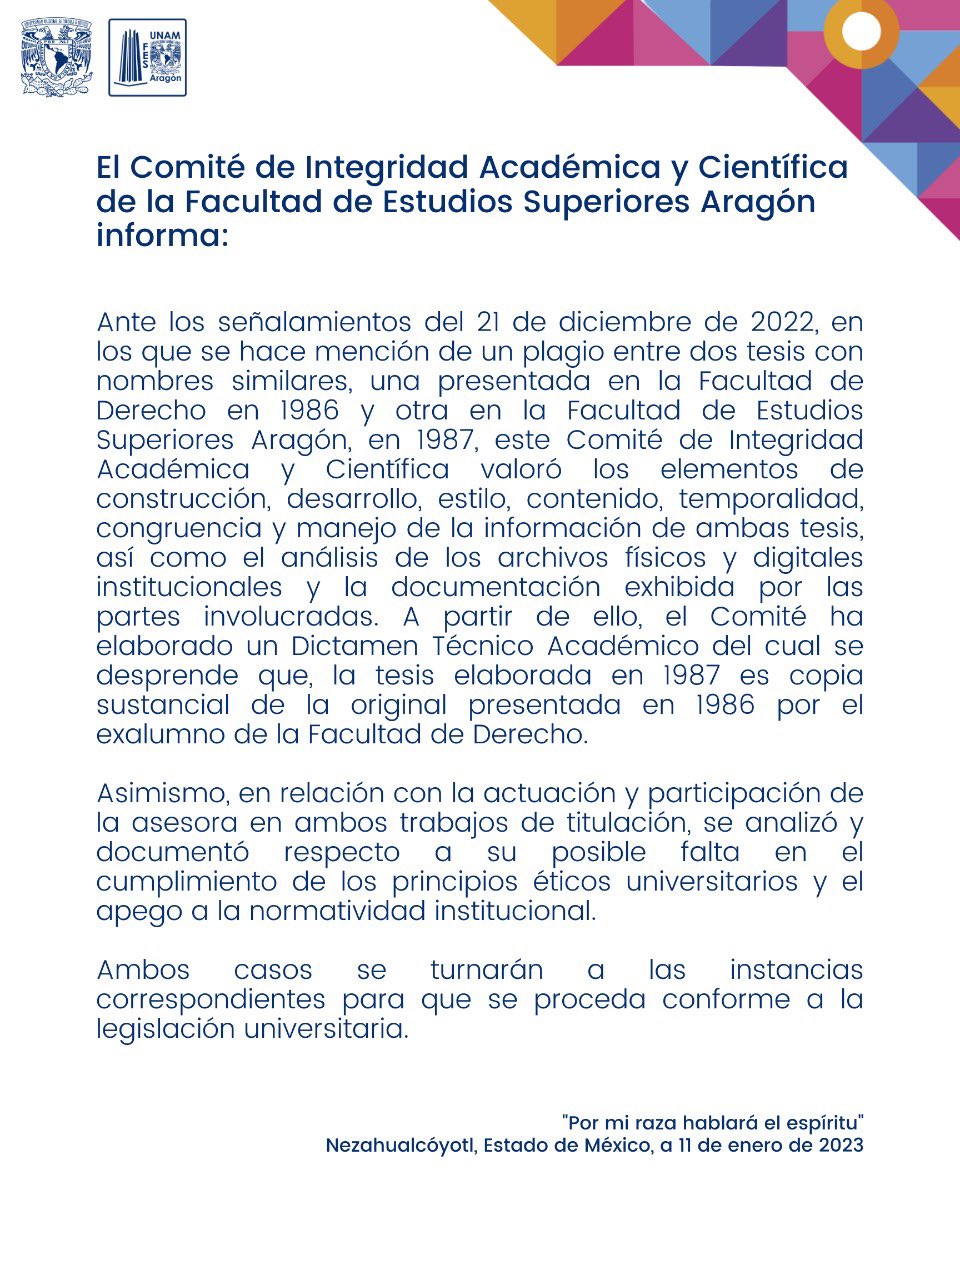 Este fue el comunicado de la FES Aragón del 11 de enero, el comité determinó que la tesis de Yasmín Esquivel es una copia sustancial (FES Aragón)